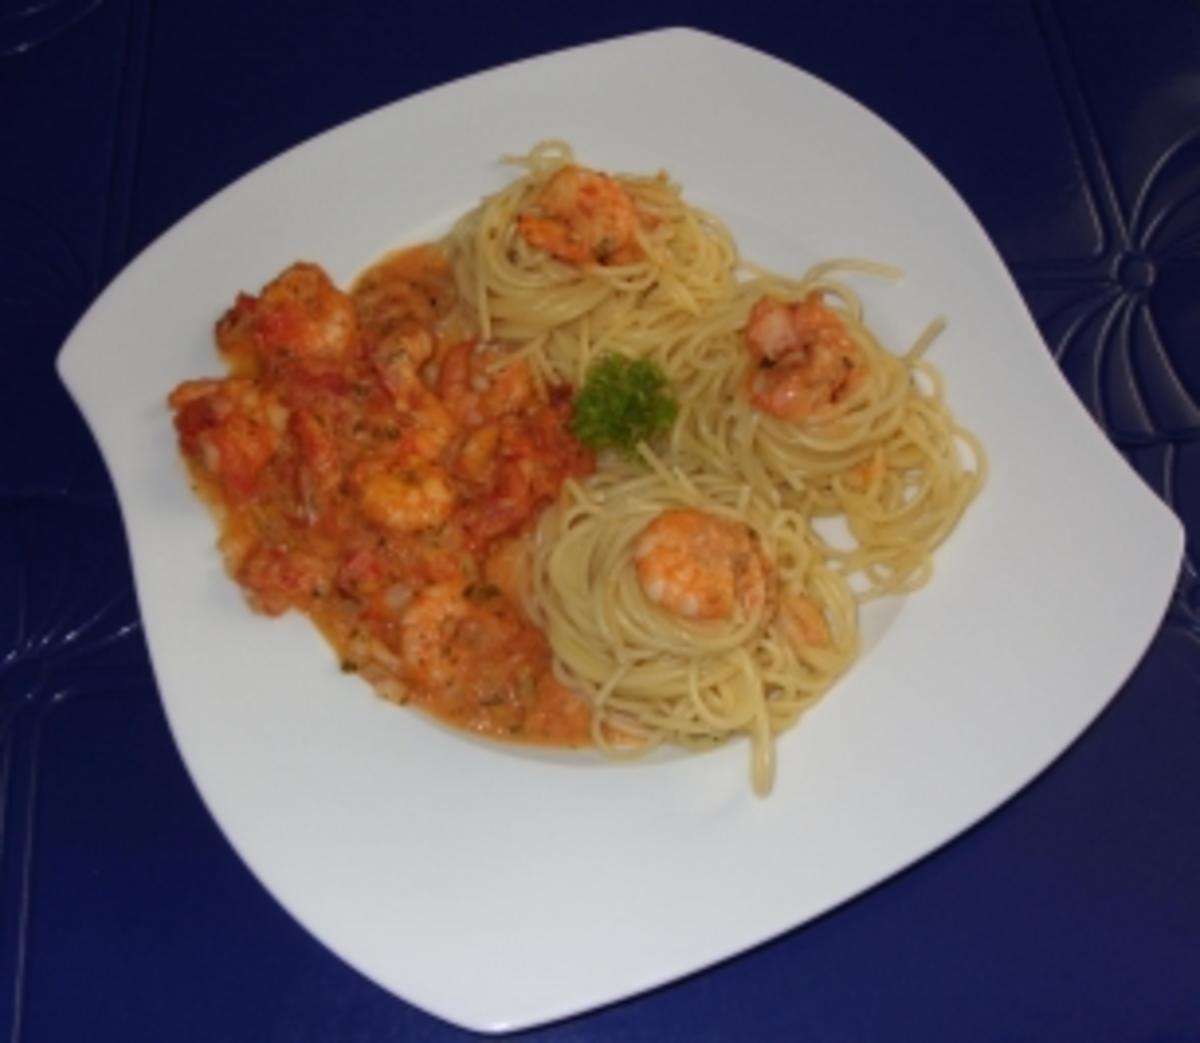 Spaghettitürmchen mit Rießengarnelen auf Tomaten-Sahnesugo - Rezept - Bild Nr. 8